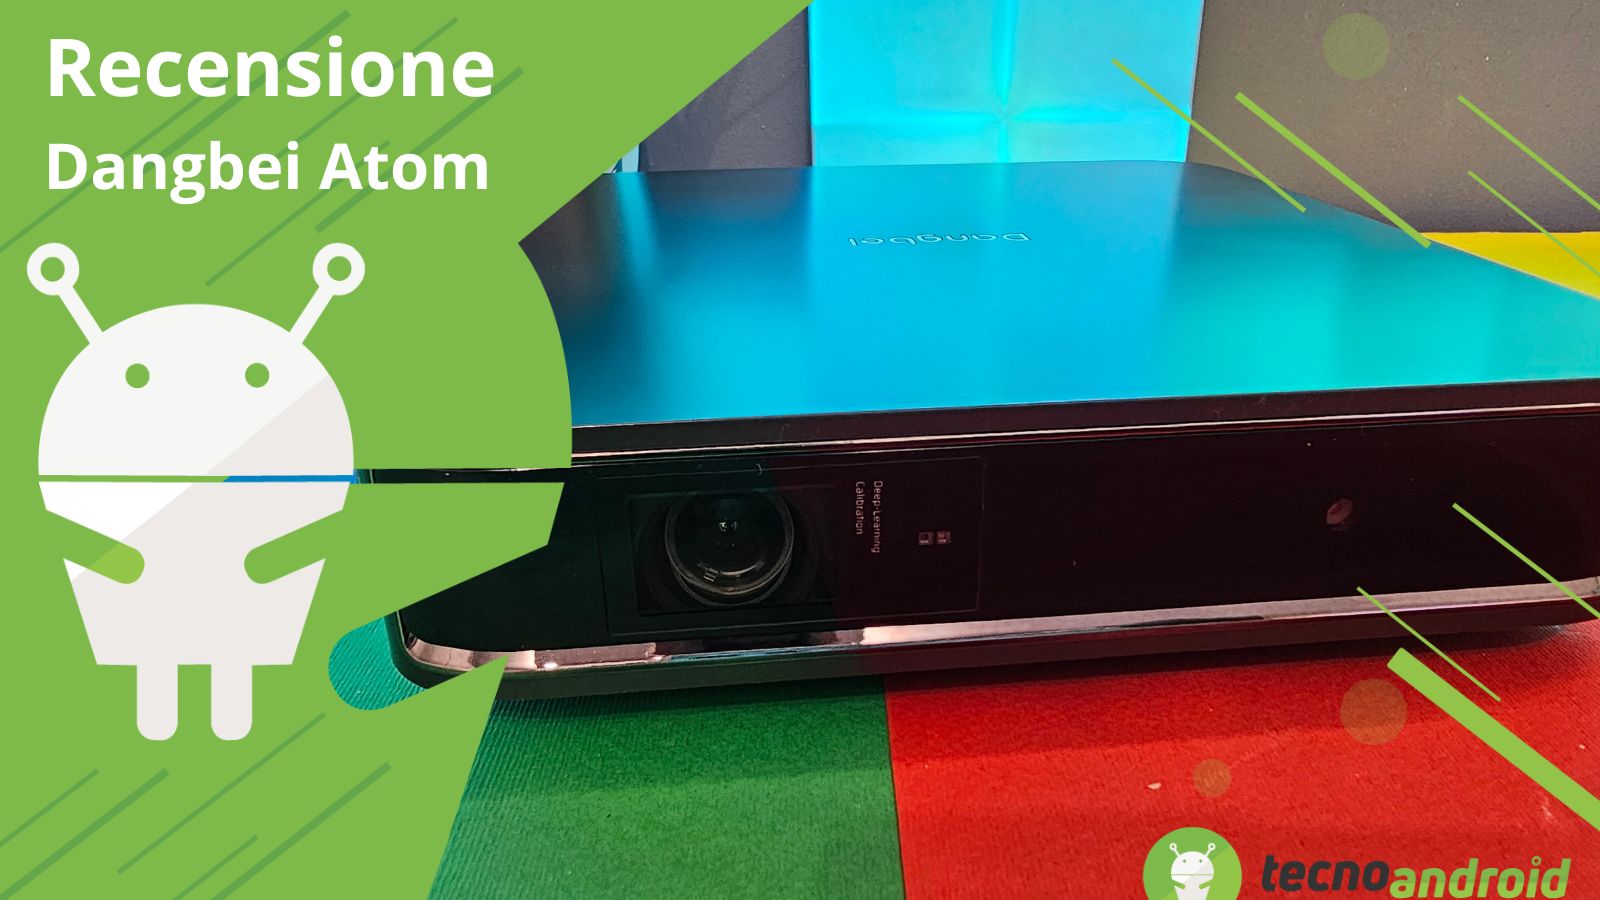 Dangbei Atom: il primo proiettore laser con Google TV di Dangbei - Recensione